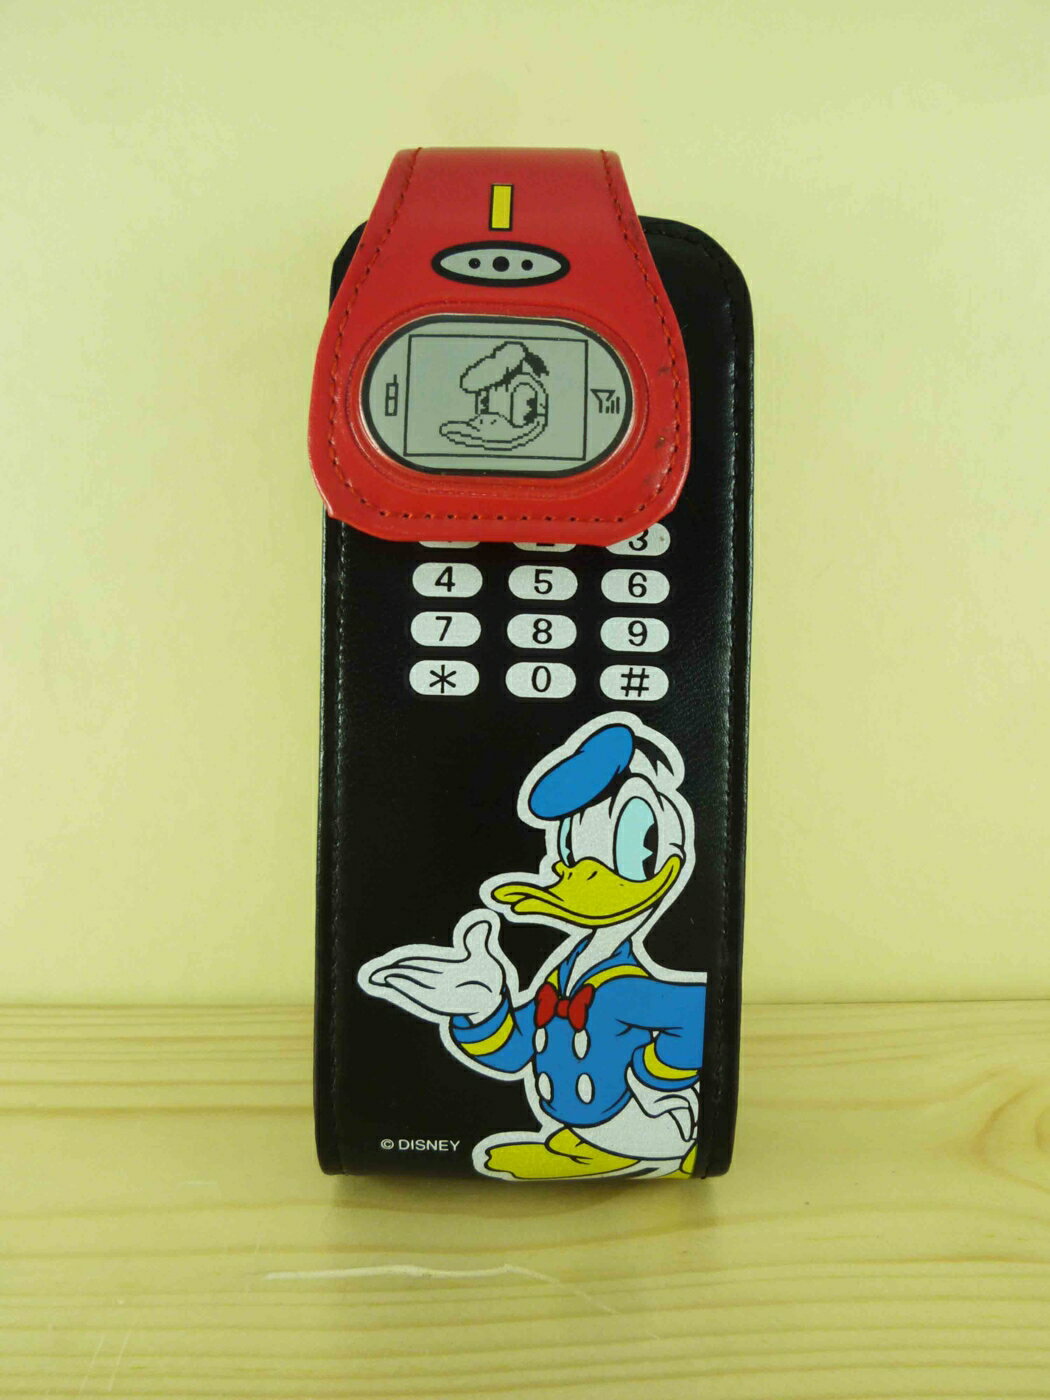 【震撼精品百貨】Donald 唐老鴨 手機袋-紅黑 震撼日式精品百貨